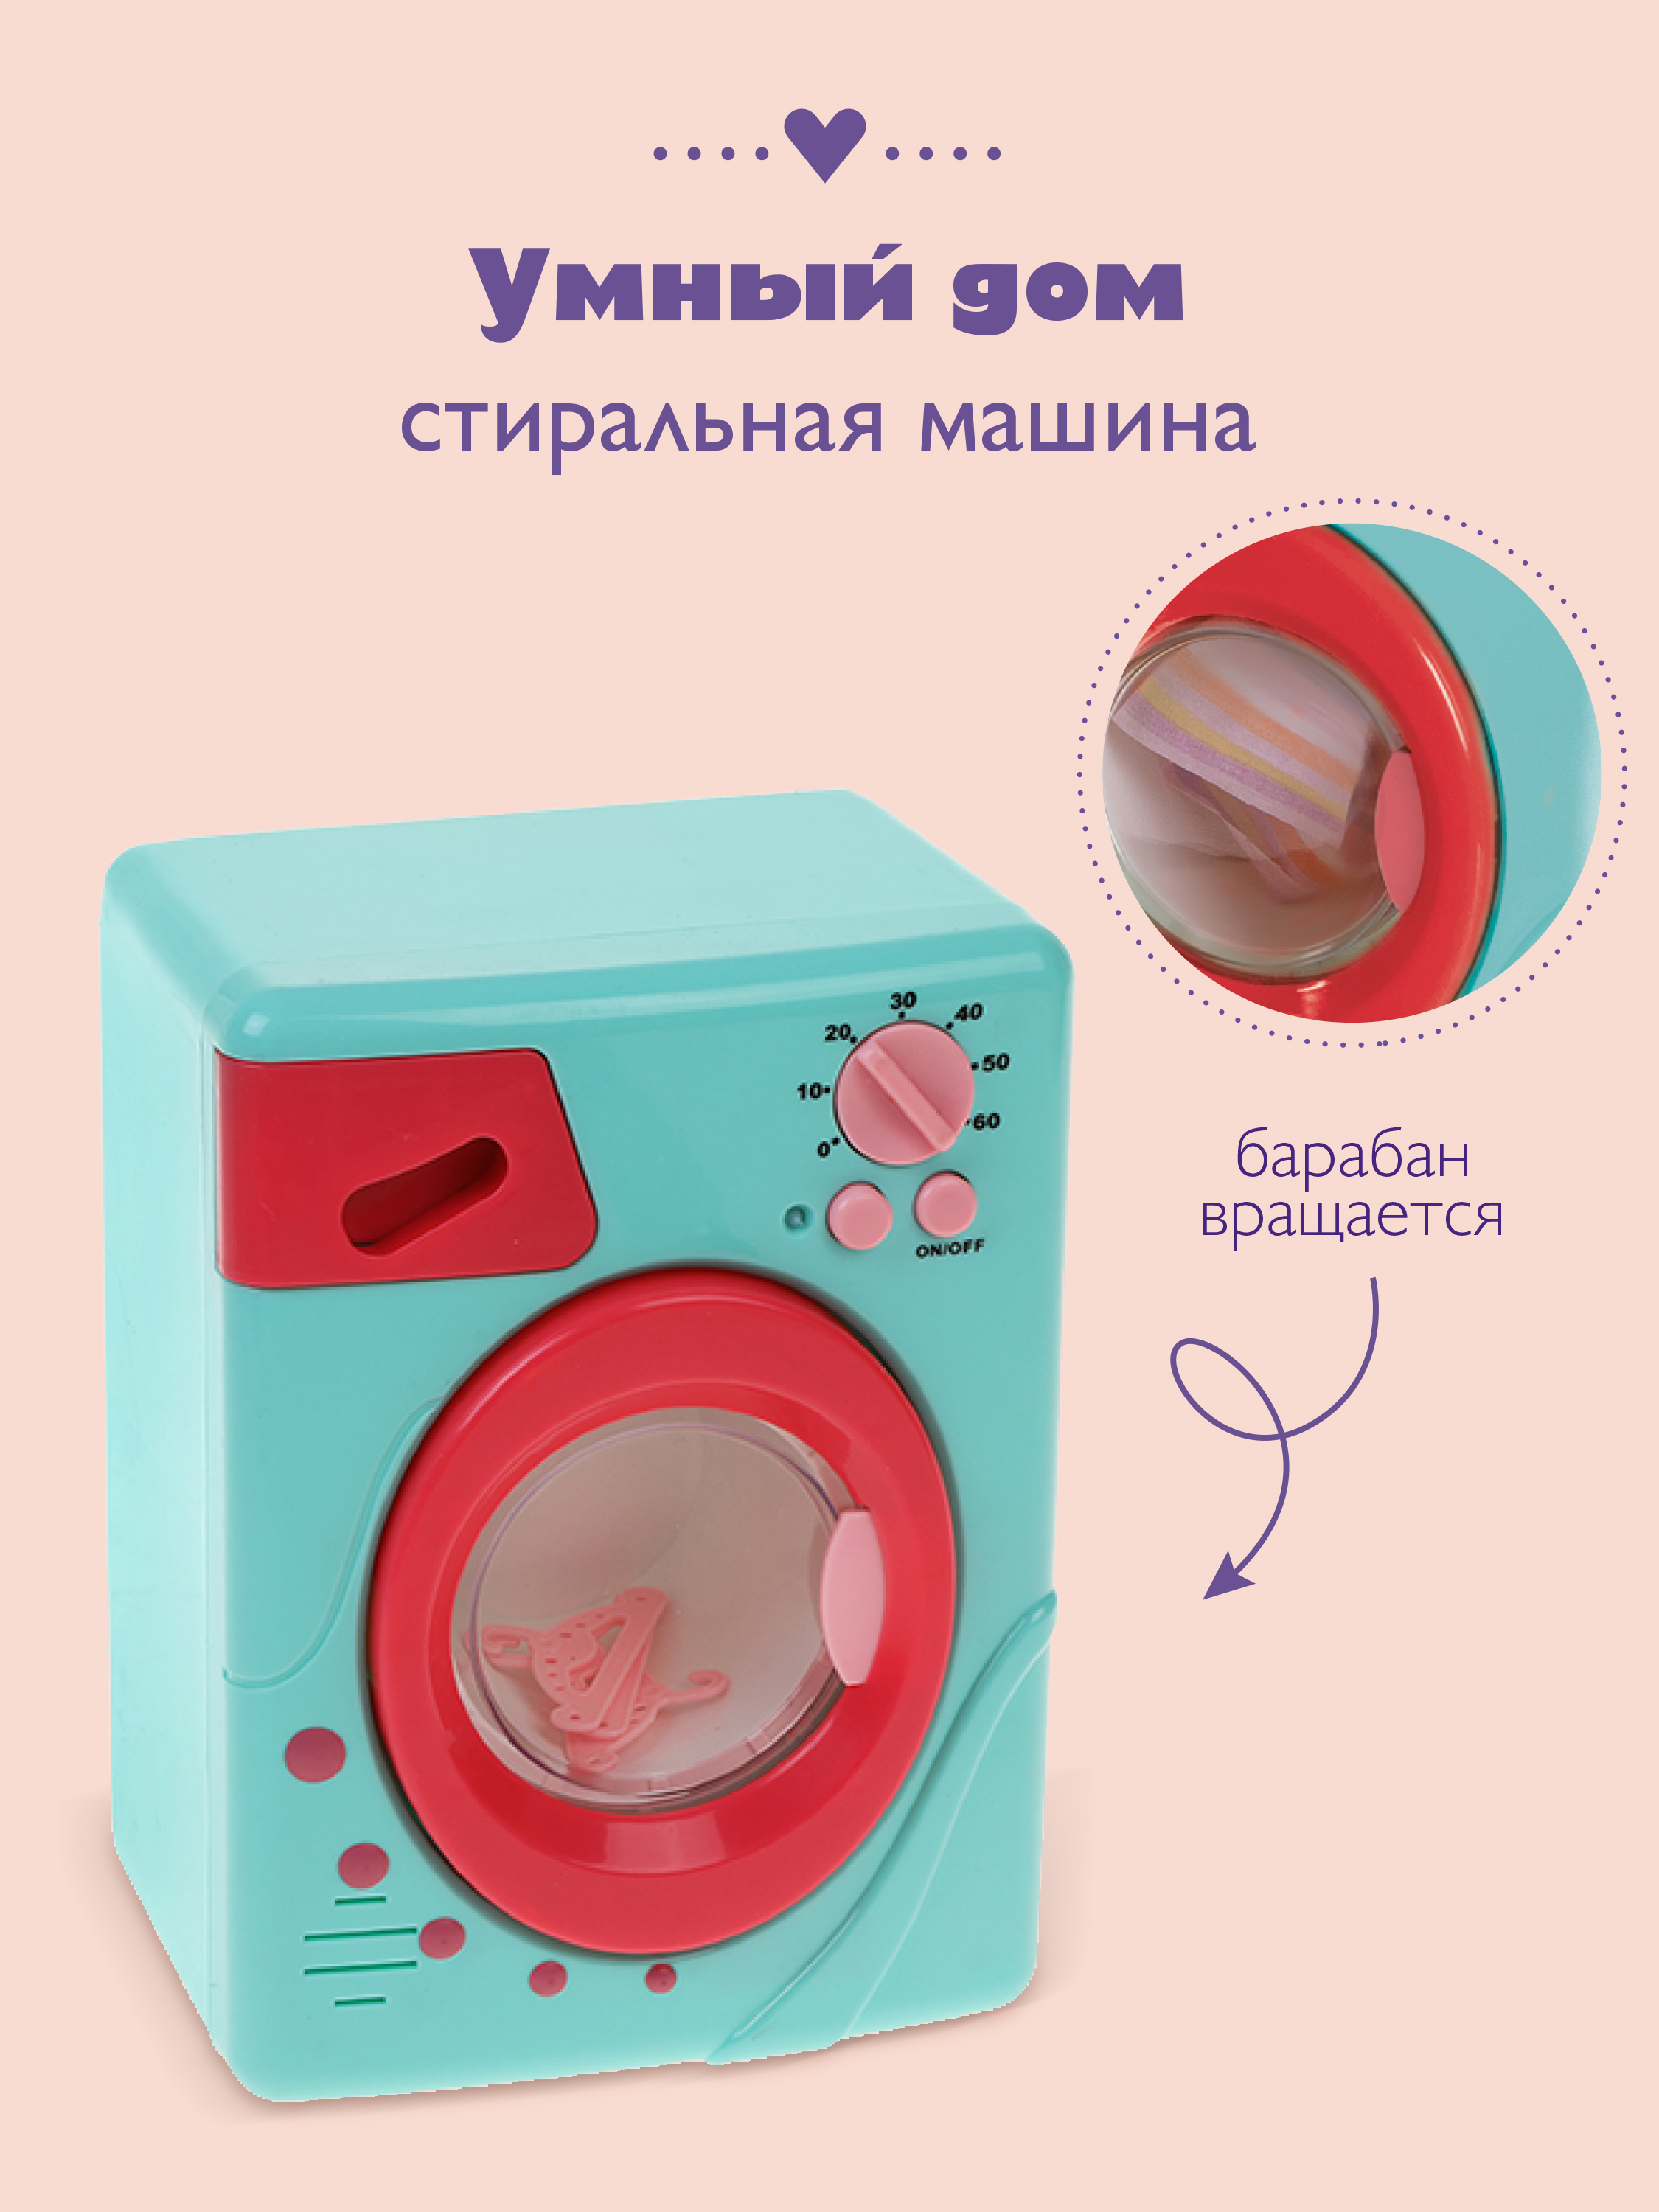 Стиральная машина электронная Умный дом, цвет: коралл mary poppins стиральная машина электронная умный дом